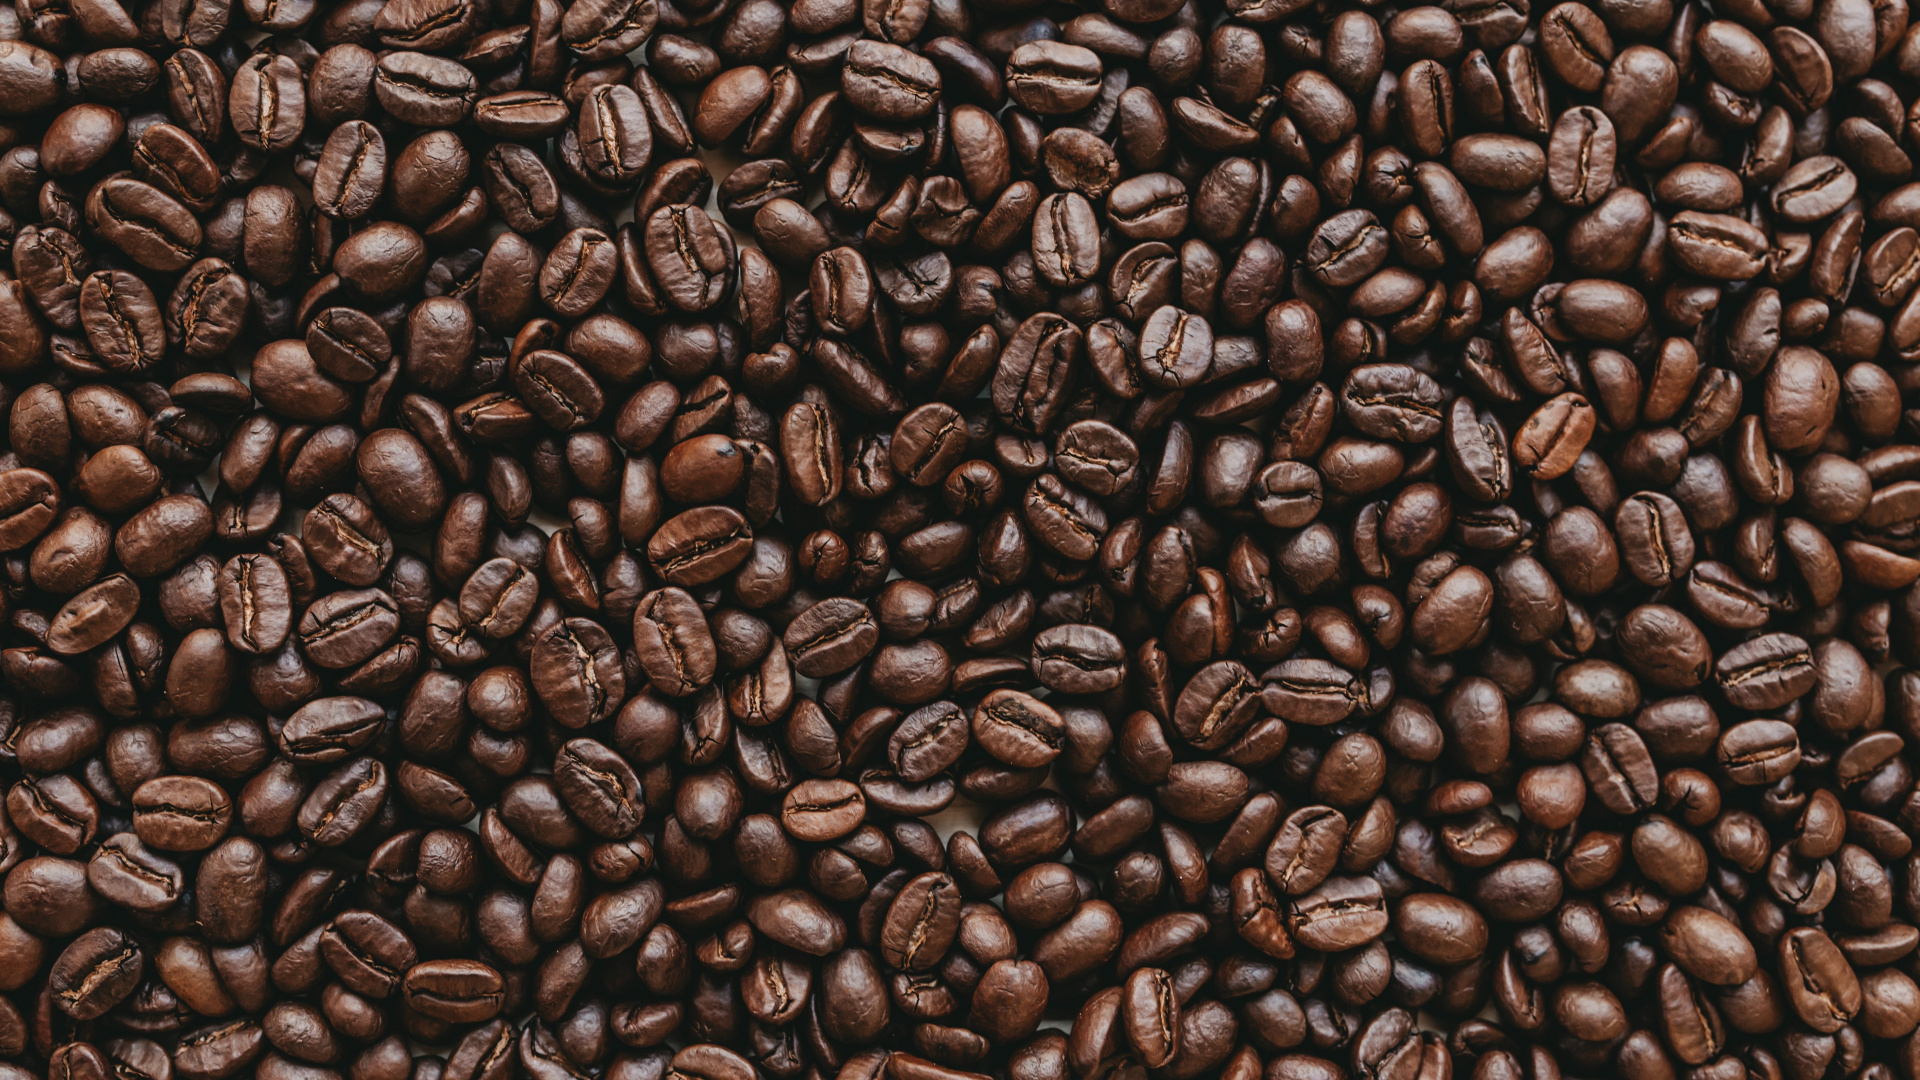 咖啡因, 棕色, 单一来源咖啡, 牙买加蓝山咖啡, Java咖啡 壁纸 1920x1080 允许